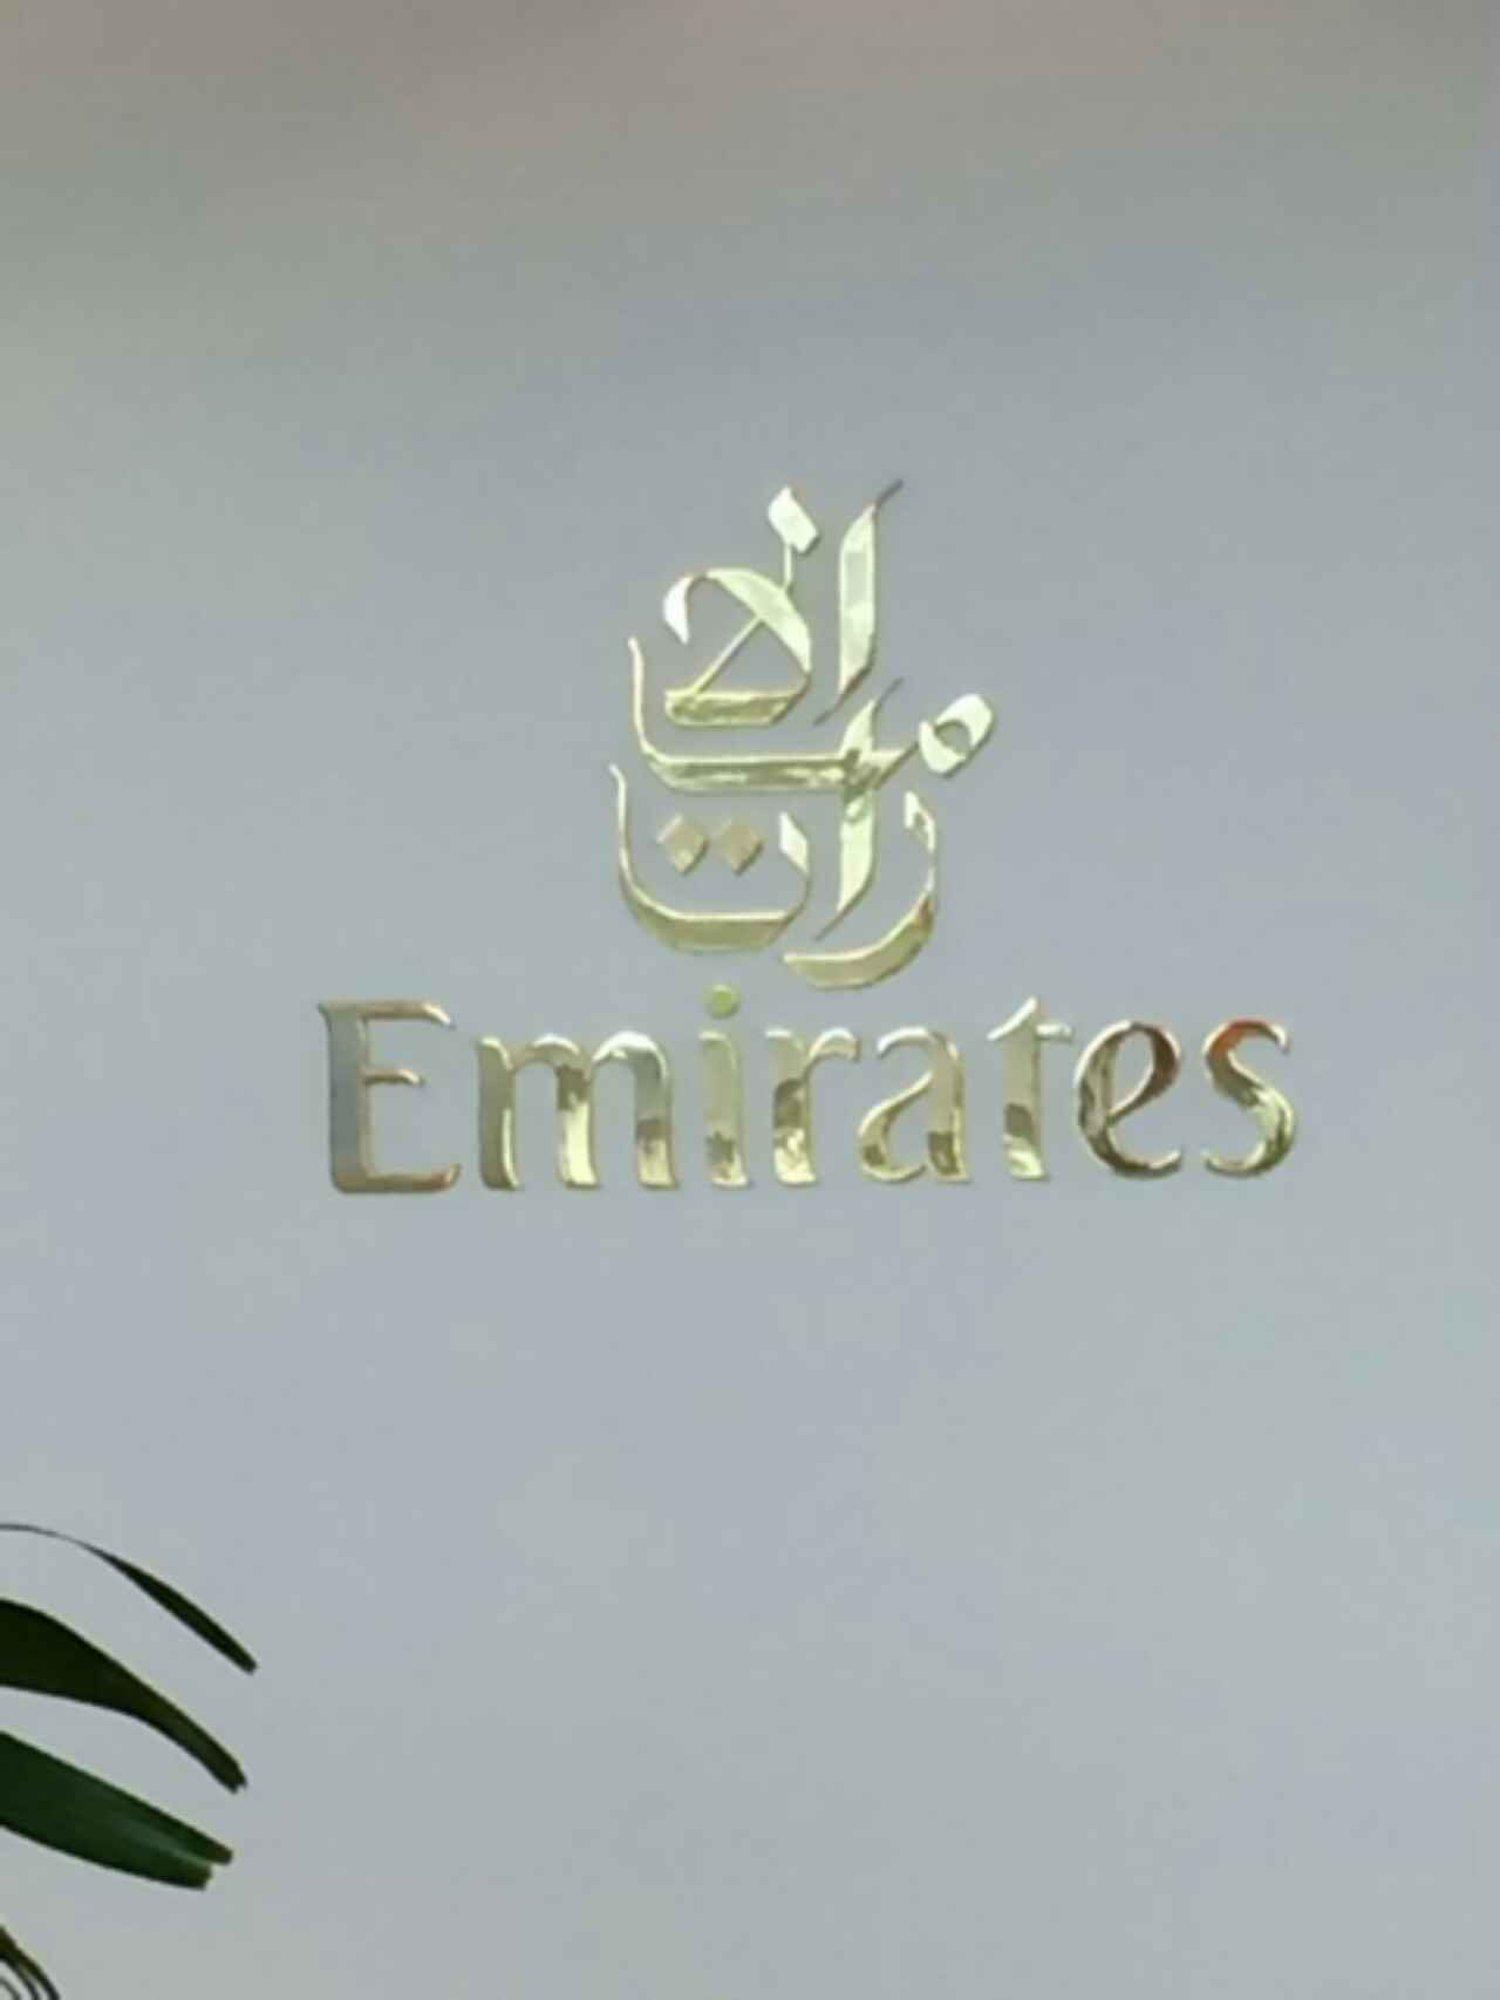 The Emirates Lounge image 3 of 8